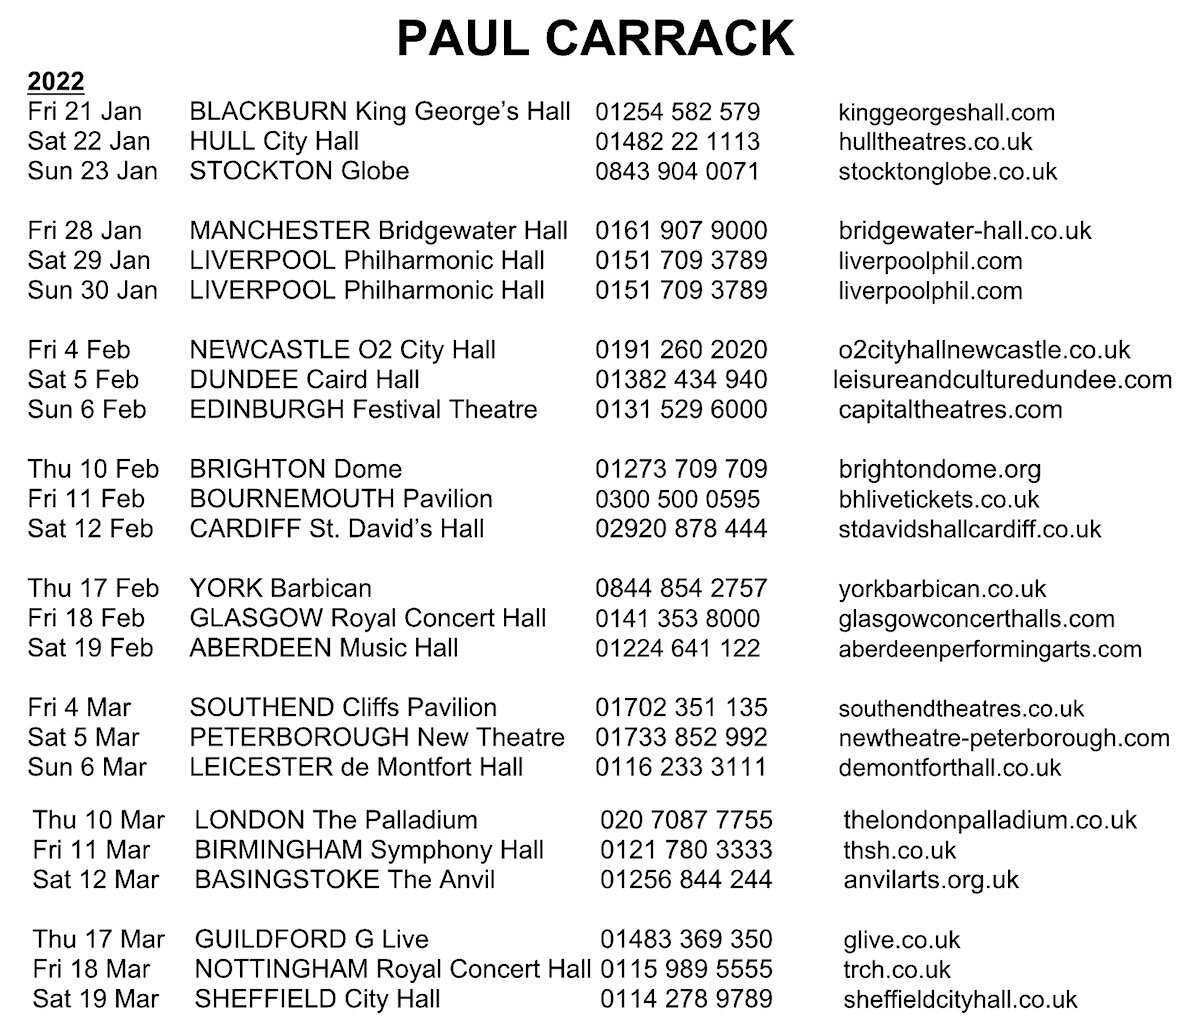 paul carrack tour dates 2022 uk